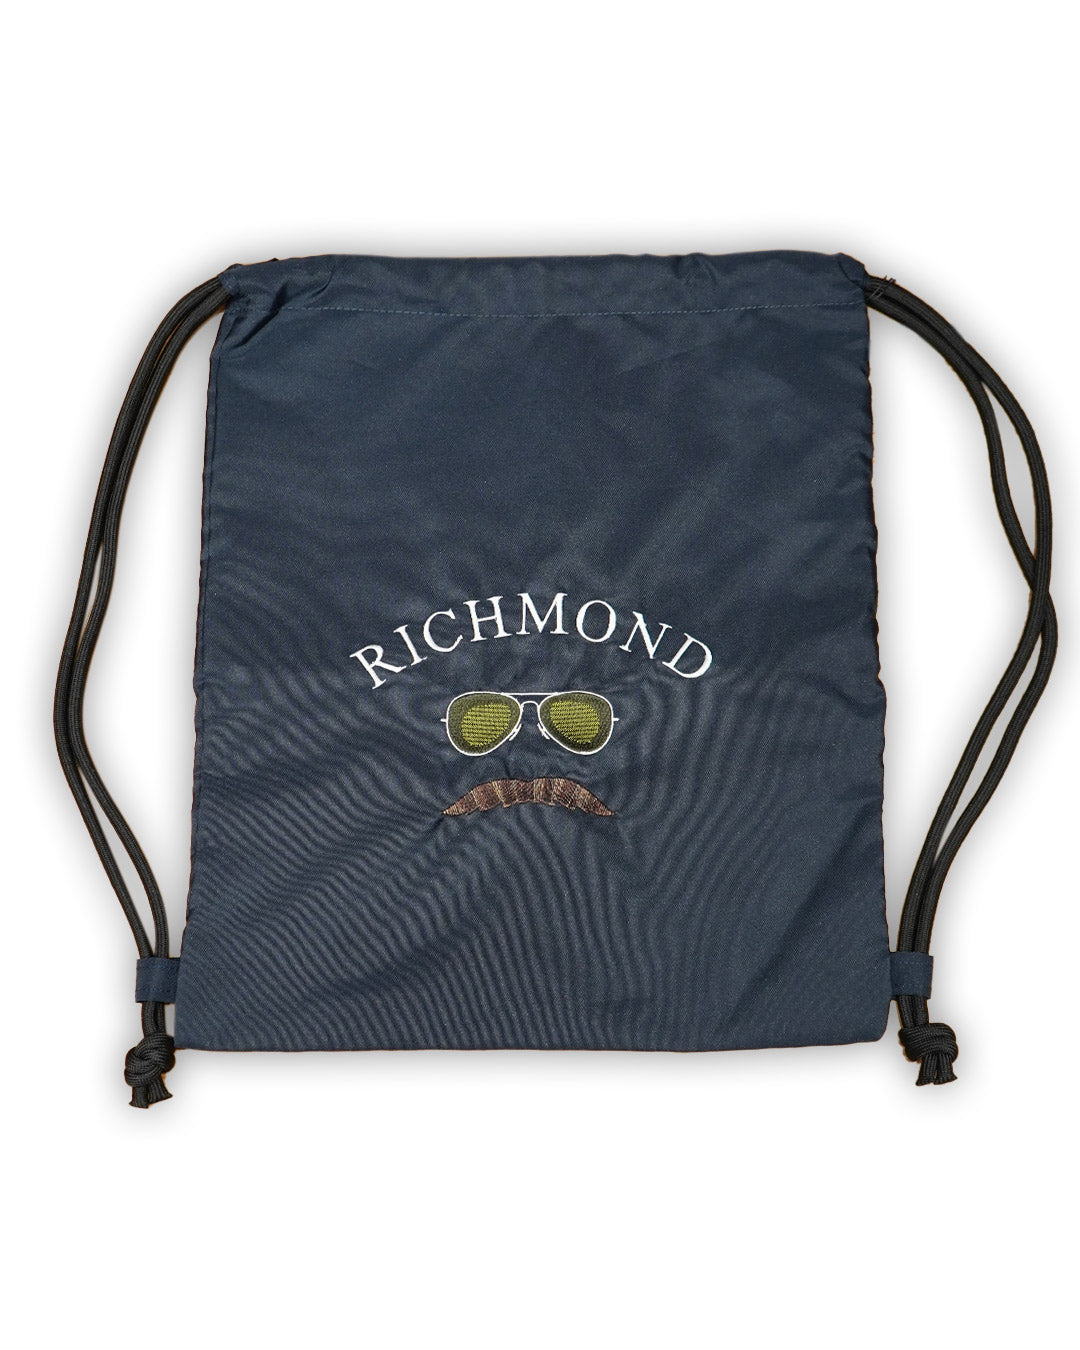 Ted Richmond Bag